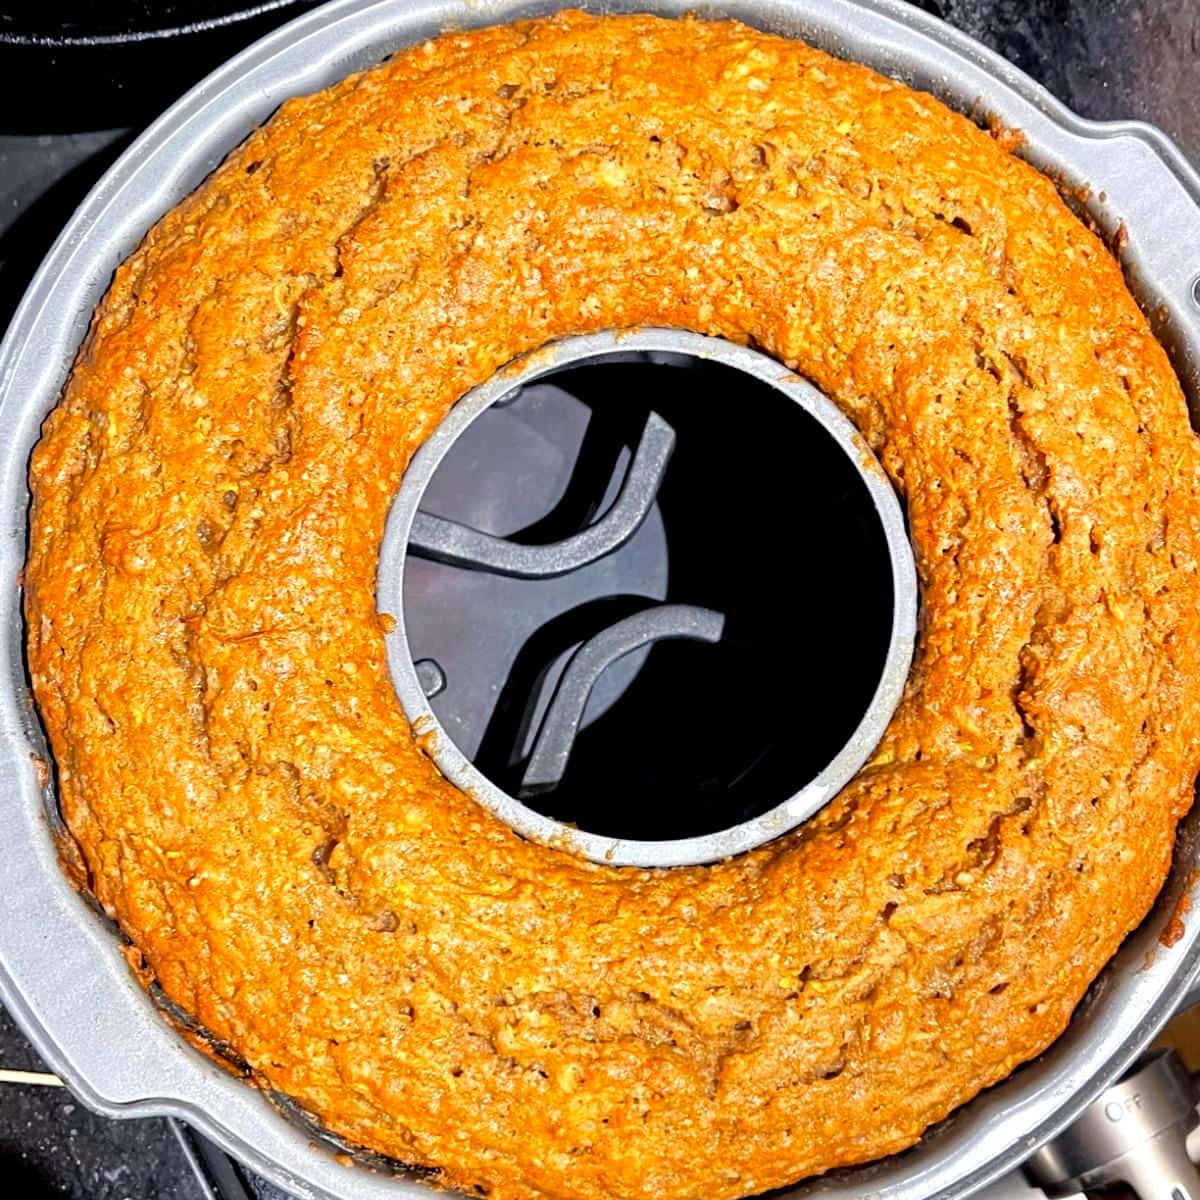 Baked vegan squash cake in bundt pan.